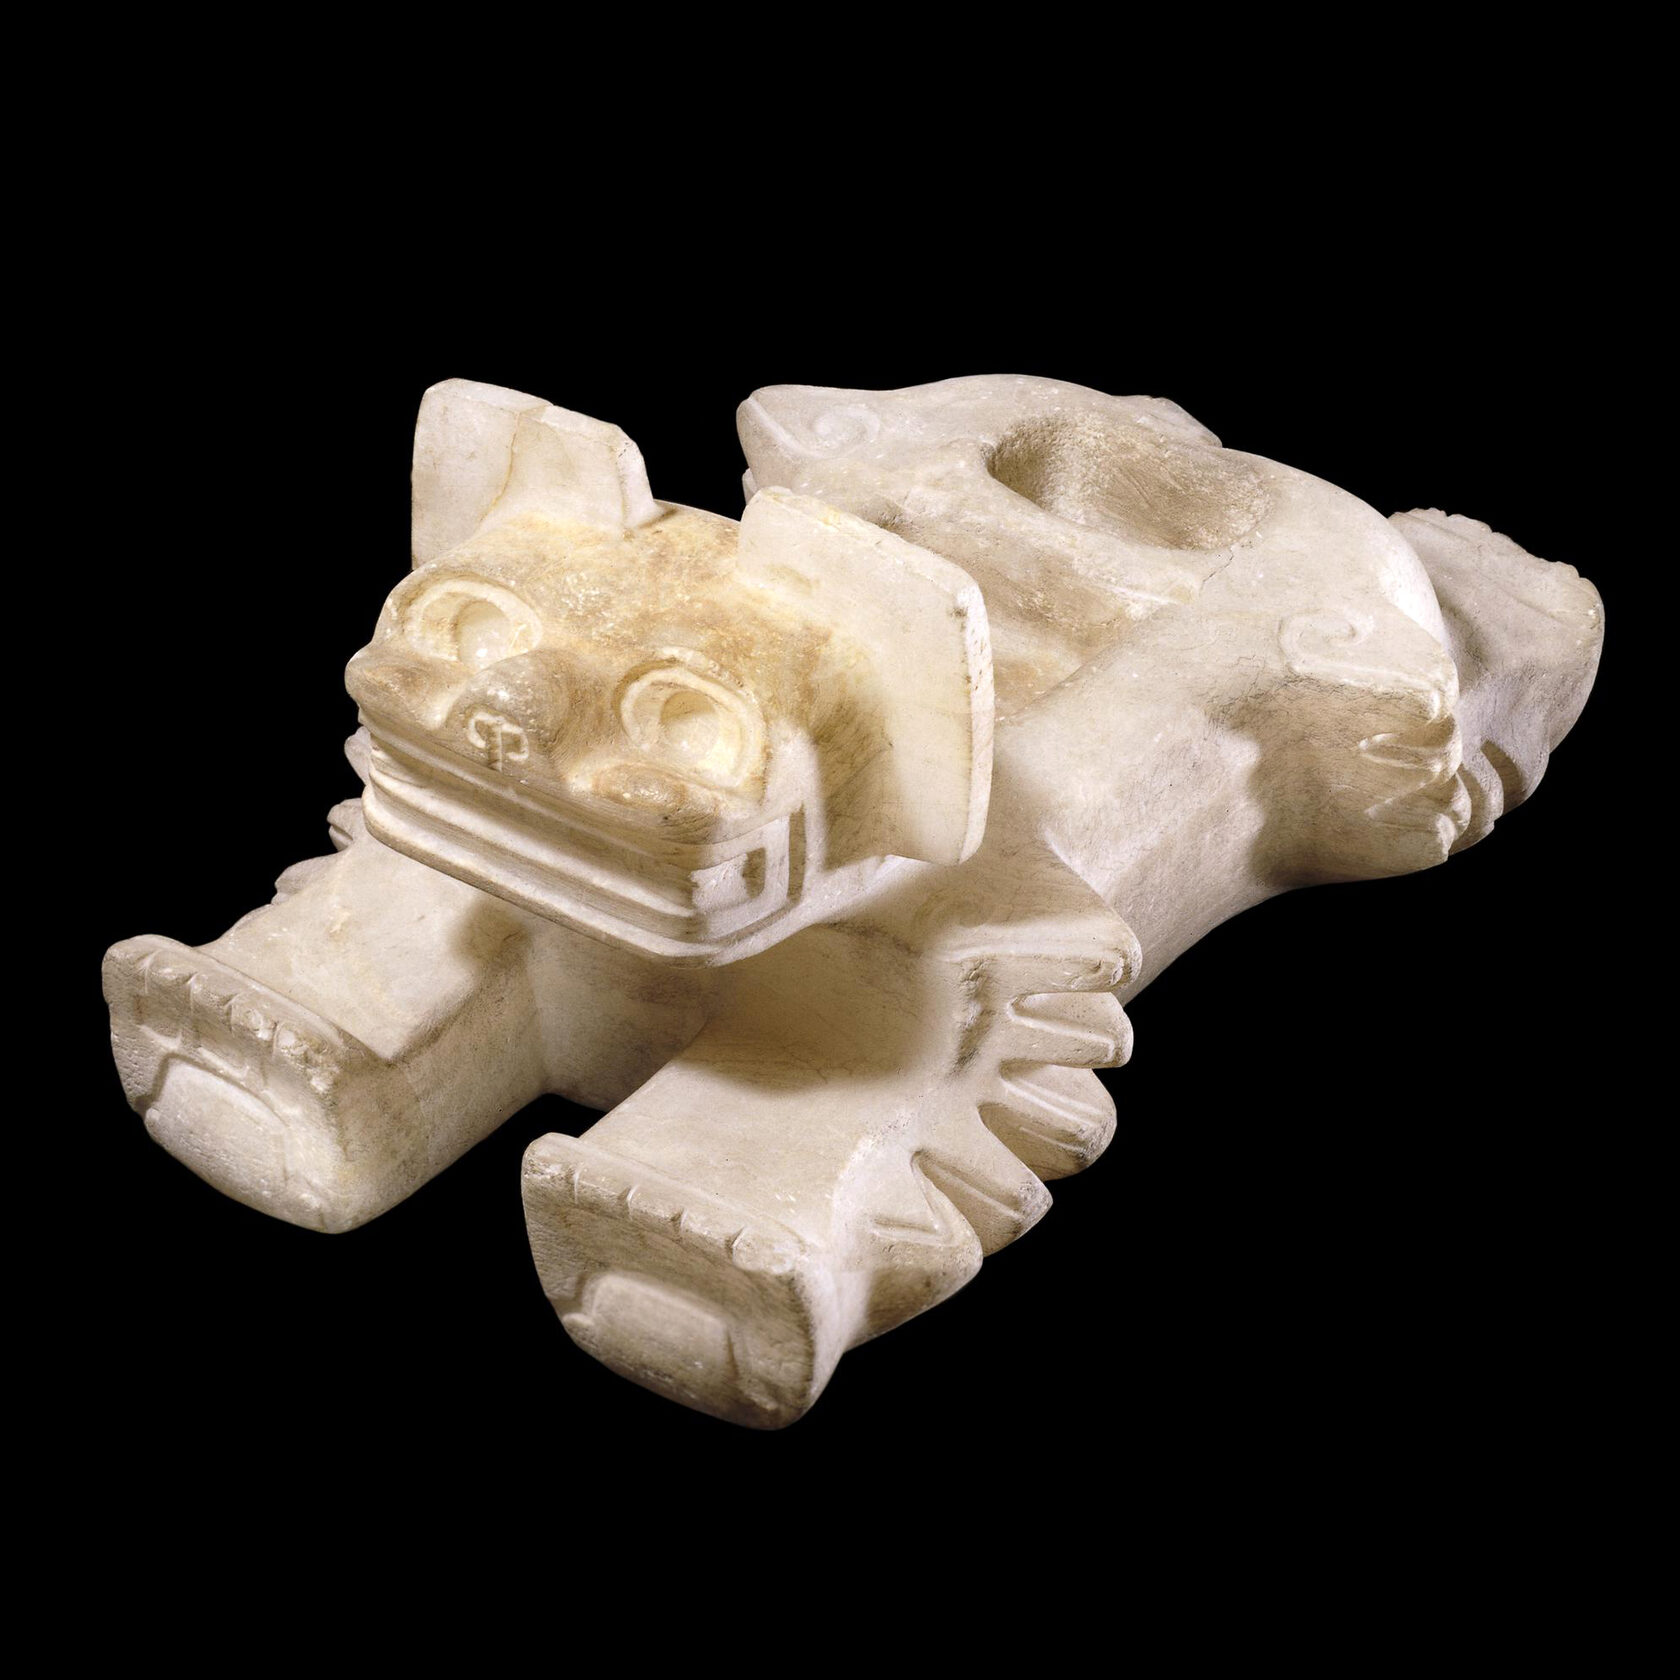 Ритуальный сосуд для сердец. Теотиуакан, 400-600 гг. н.э. Коллекция The British Museum.